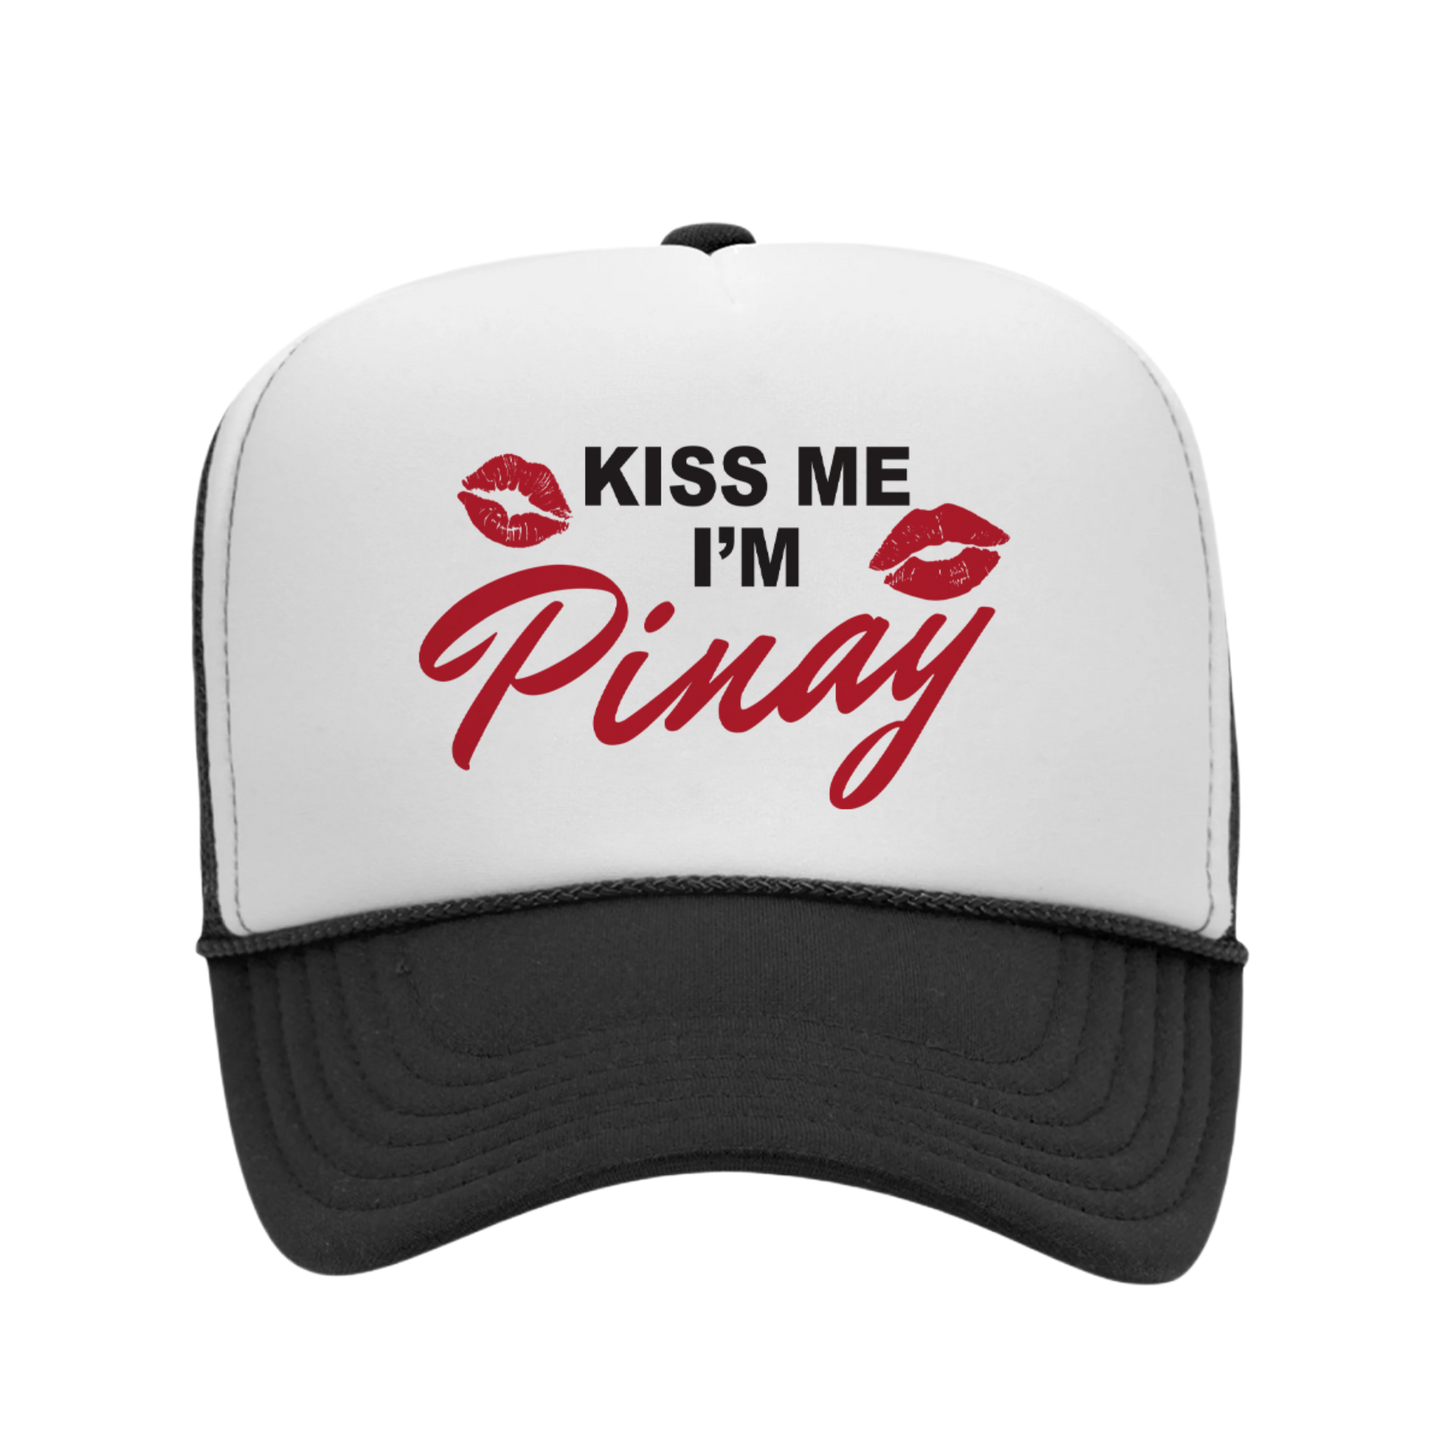 Kiss Me, I’m Pinay Trucker Hat